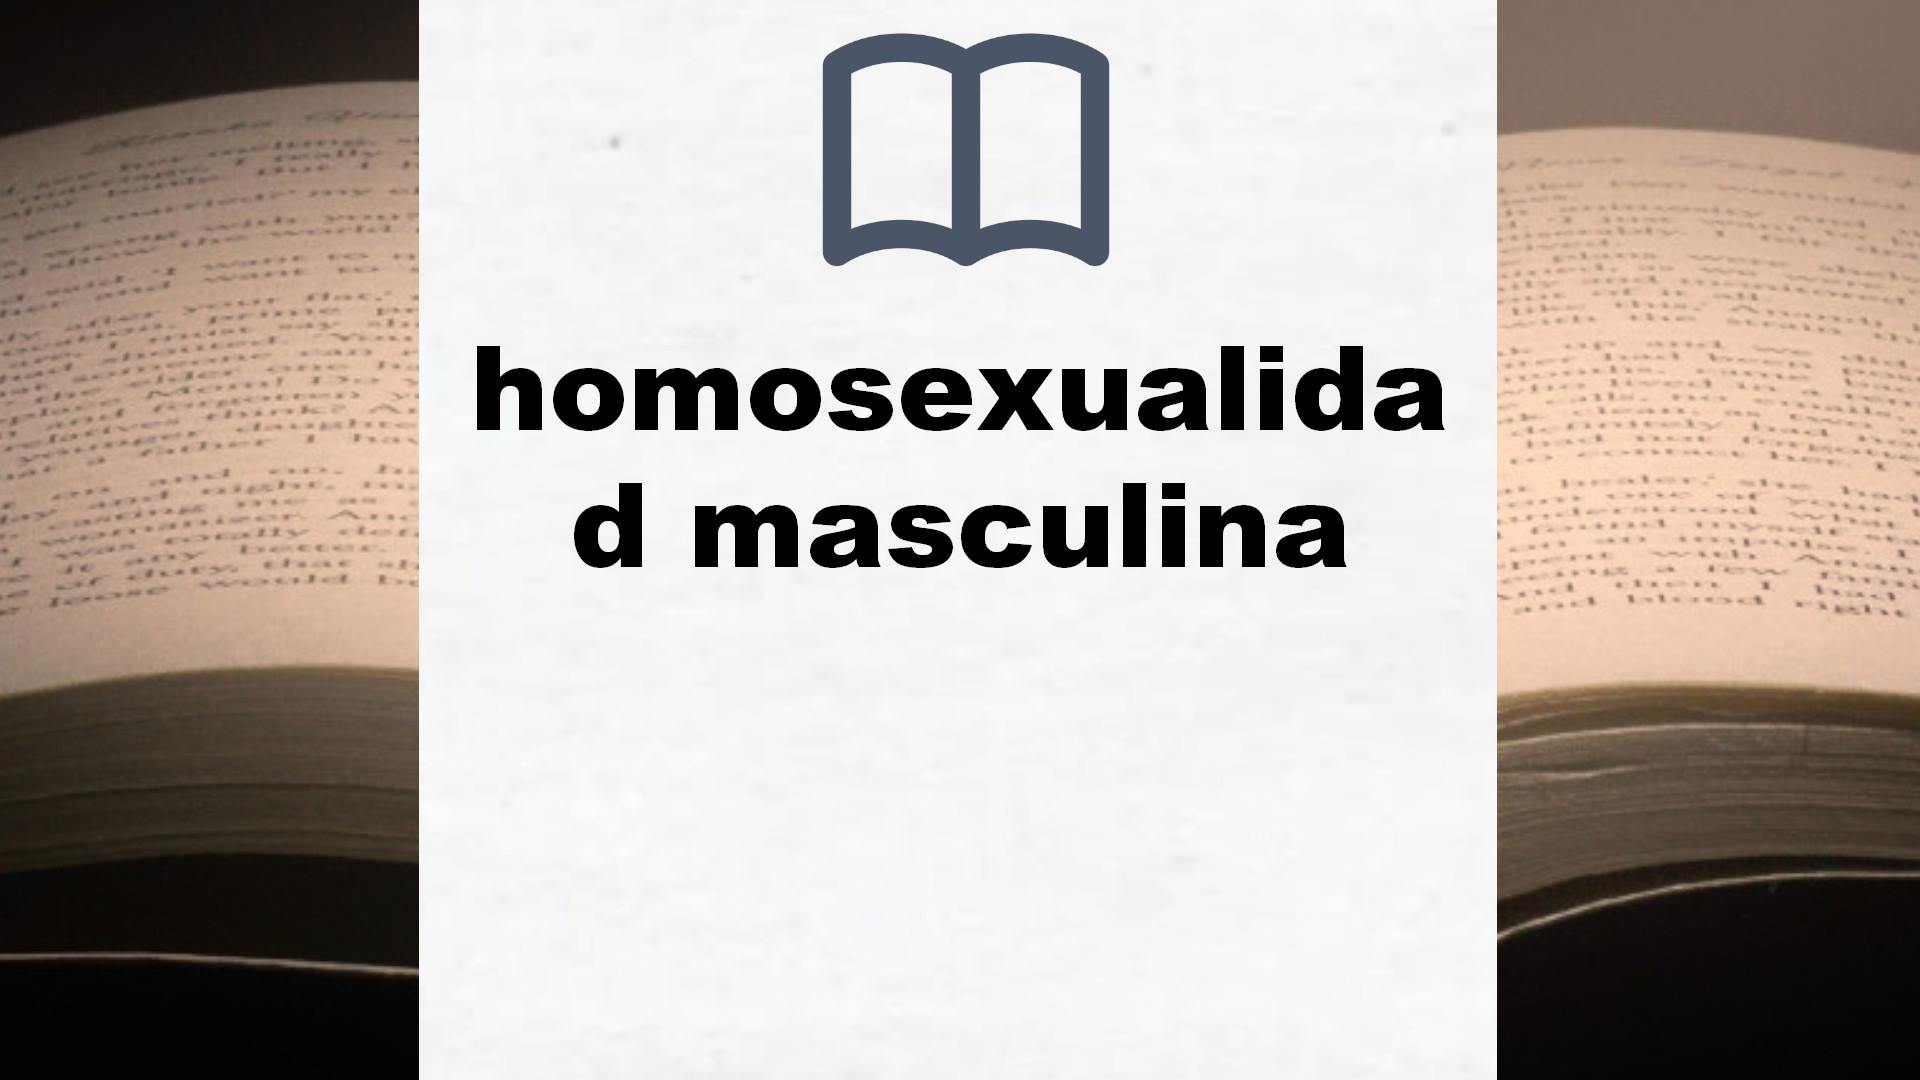 Libros sobre homosexualidad masculina